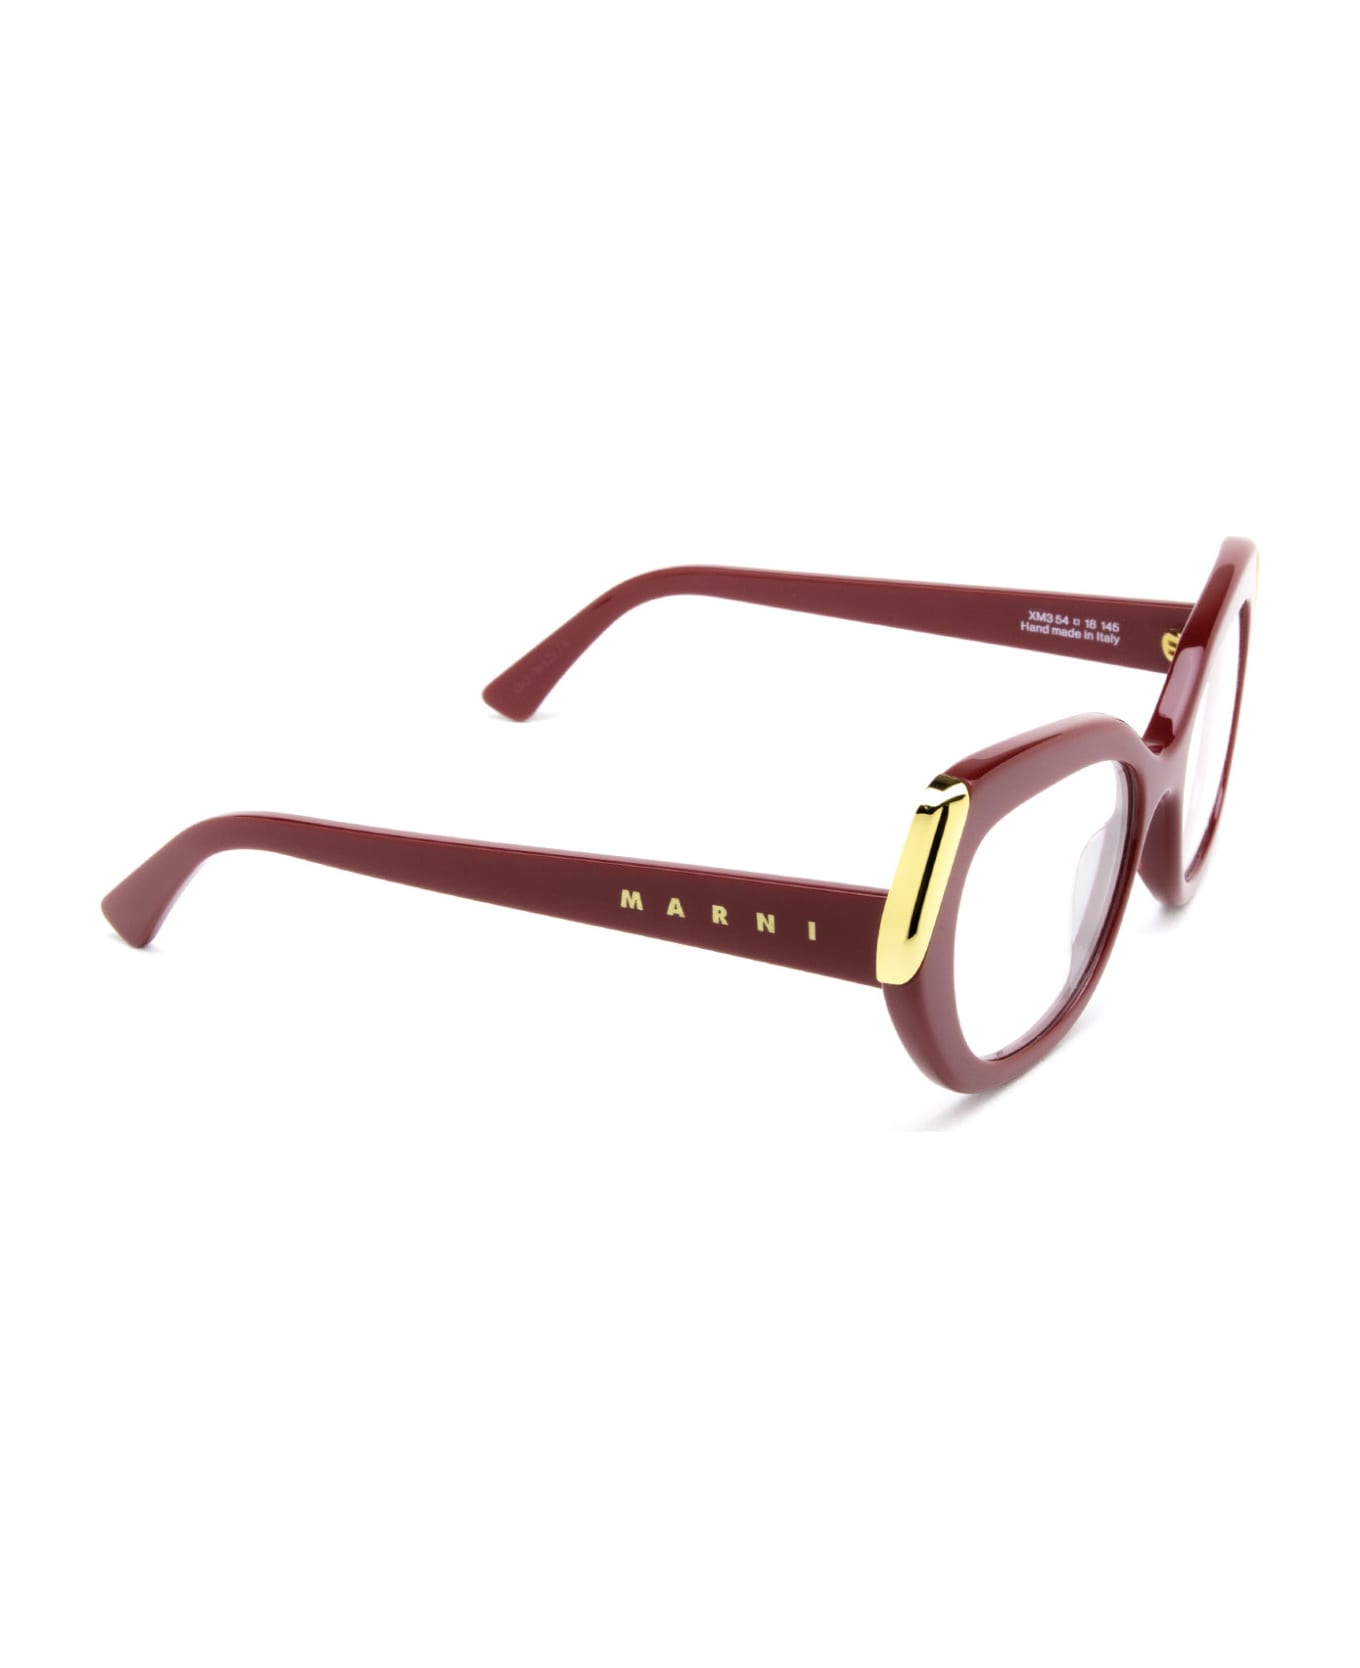 Marni Eyewear Antelope Canyon Bordeaux Glasses - Bordeaux アイウェア